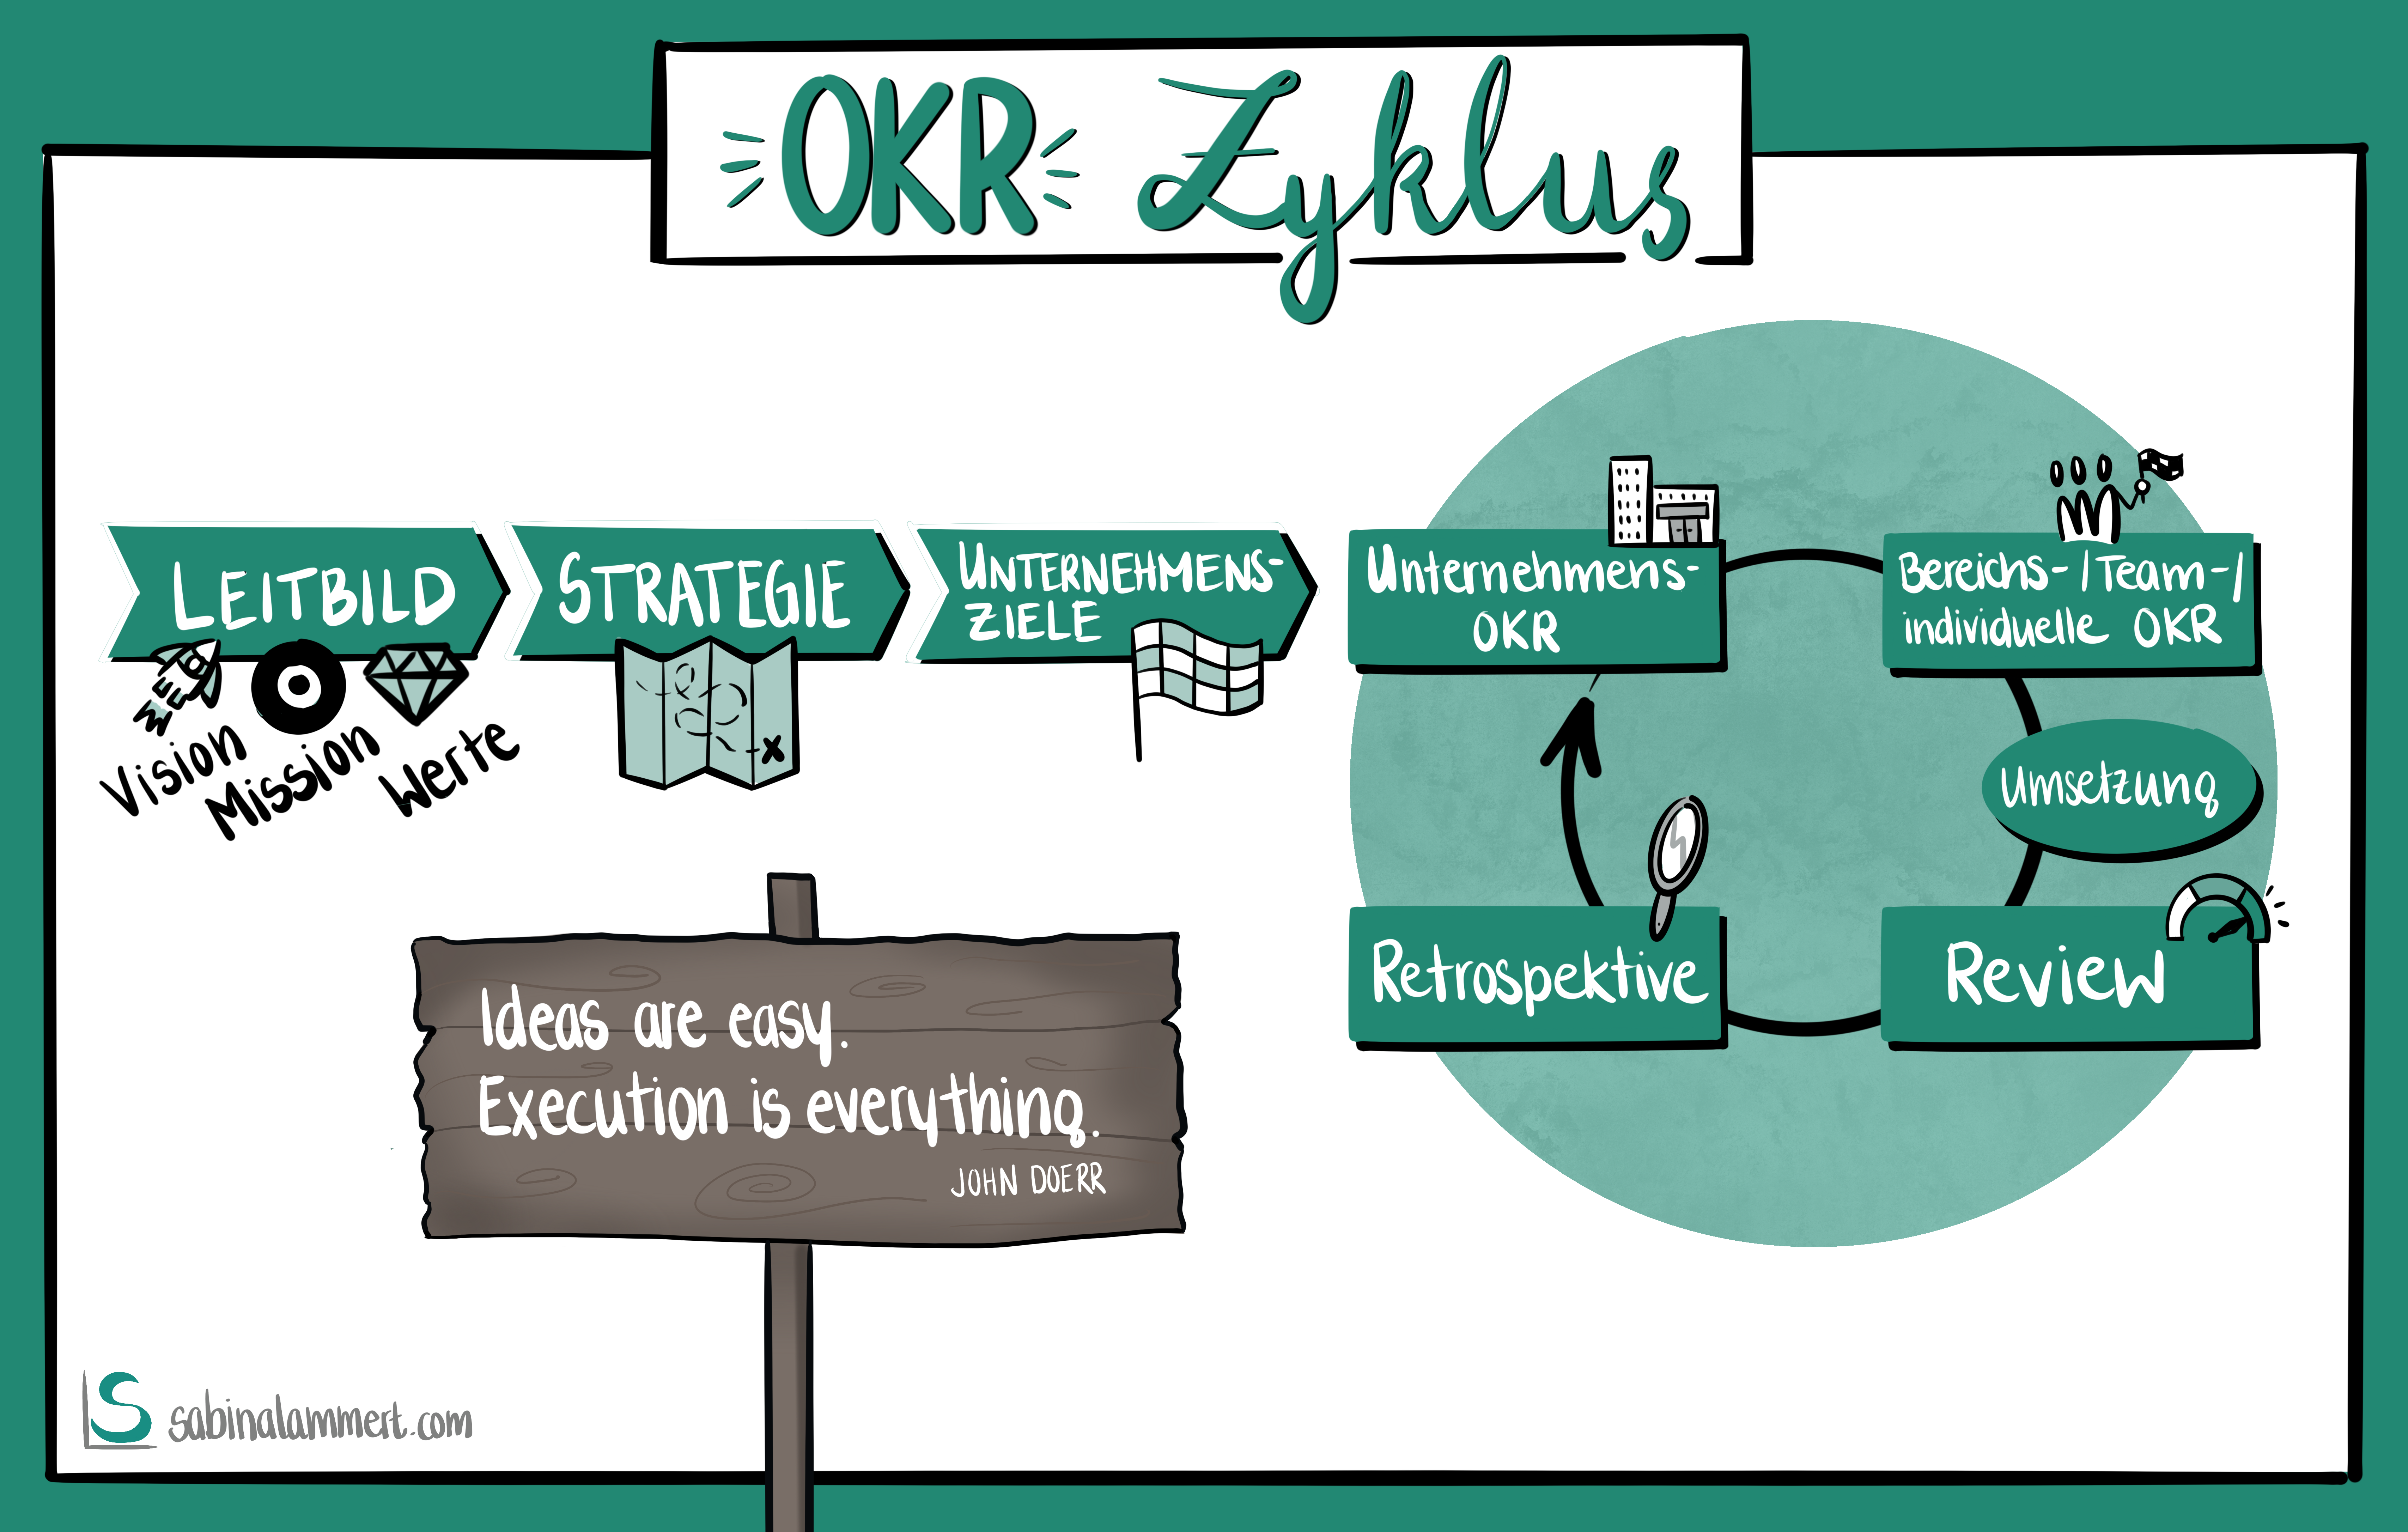 Bild 2: Der OKR-Zyklus mit seinen vier Phasen